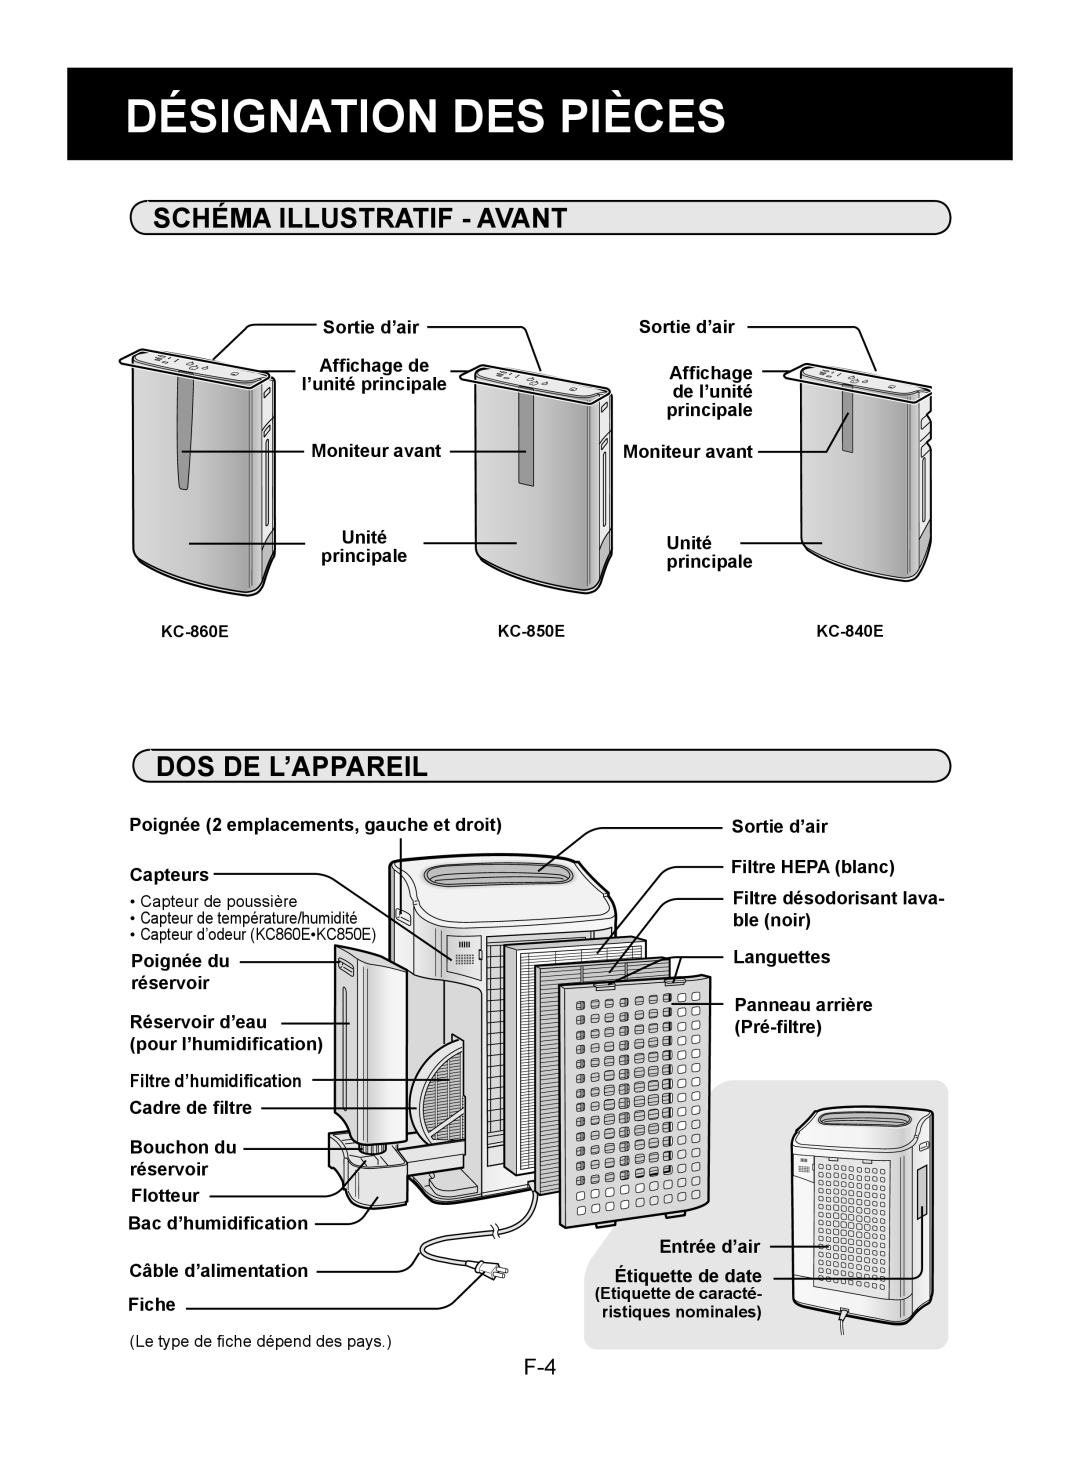 Sharp KC-850E Désignation Des Pièces, Schéma Illustratif - Avant, Dos De L’Appareil, Sortie d’air, Affichage de, Unité 